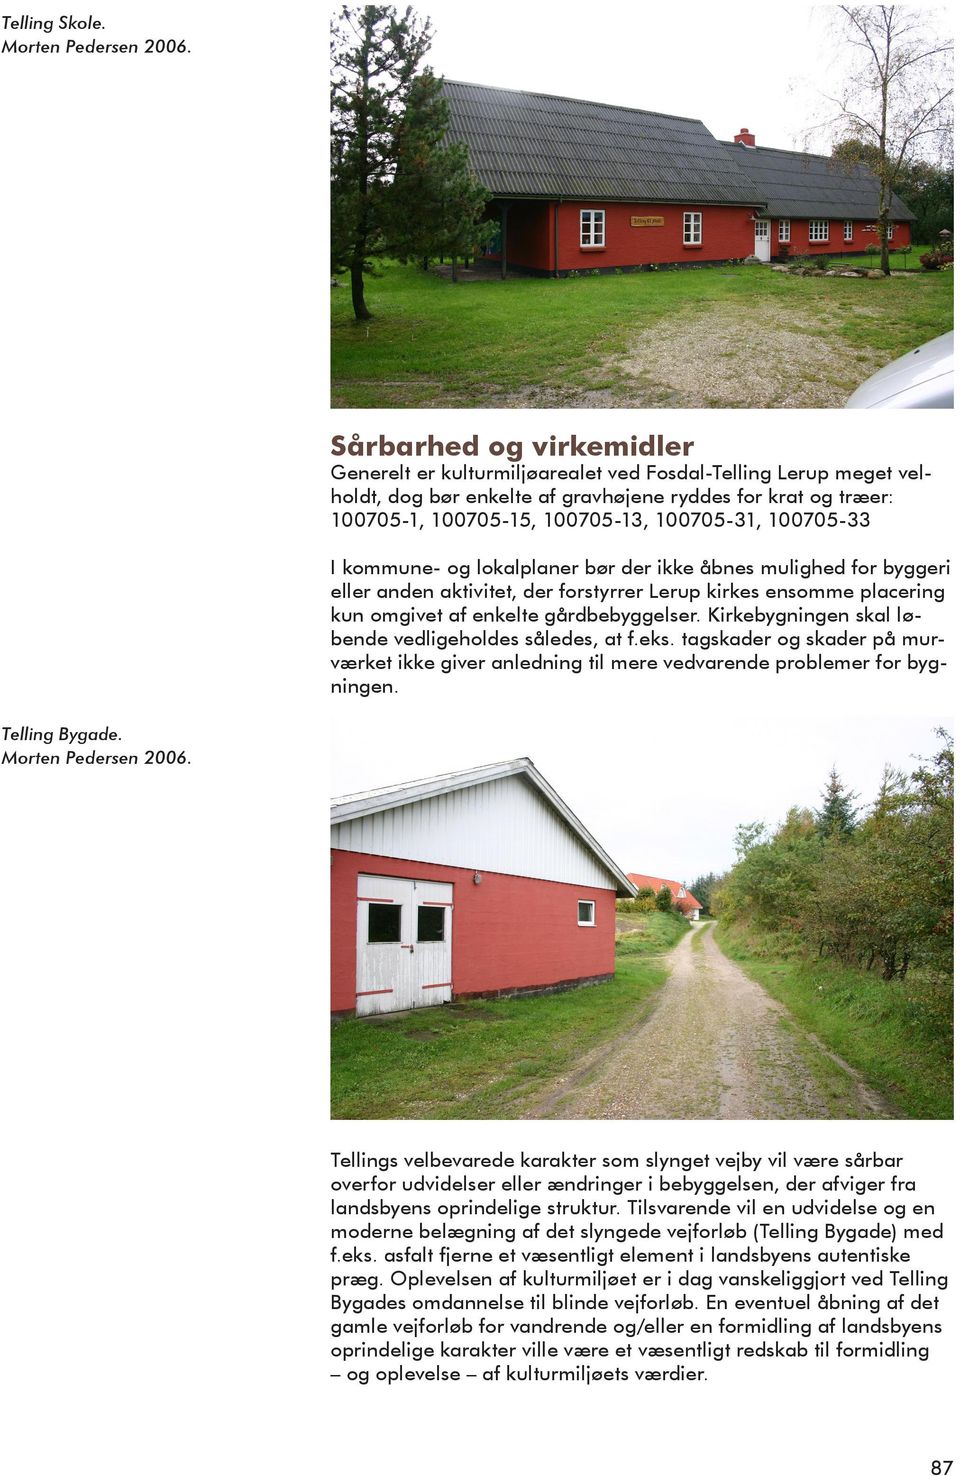 100705-33 I kommune- og lokalplaner bør der ikke åbnes mulighed for byggeri eller anden aktivitet, der forstyrrer Lerup kirkes ensomme placering kun omgivet af enkelte gårdbebyggelser.